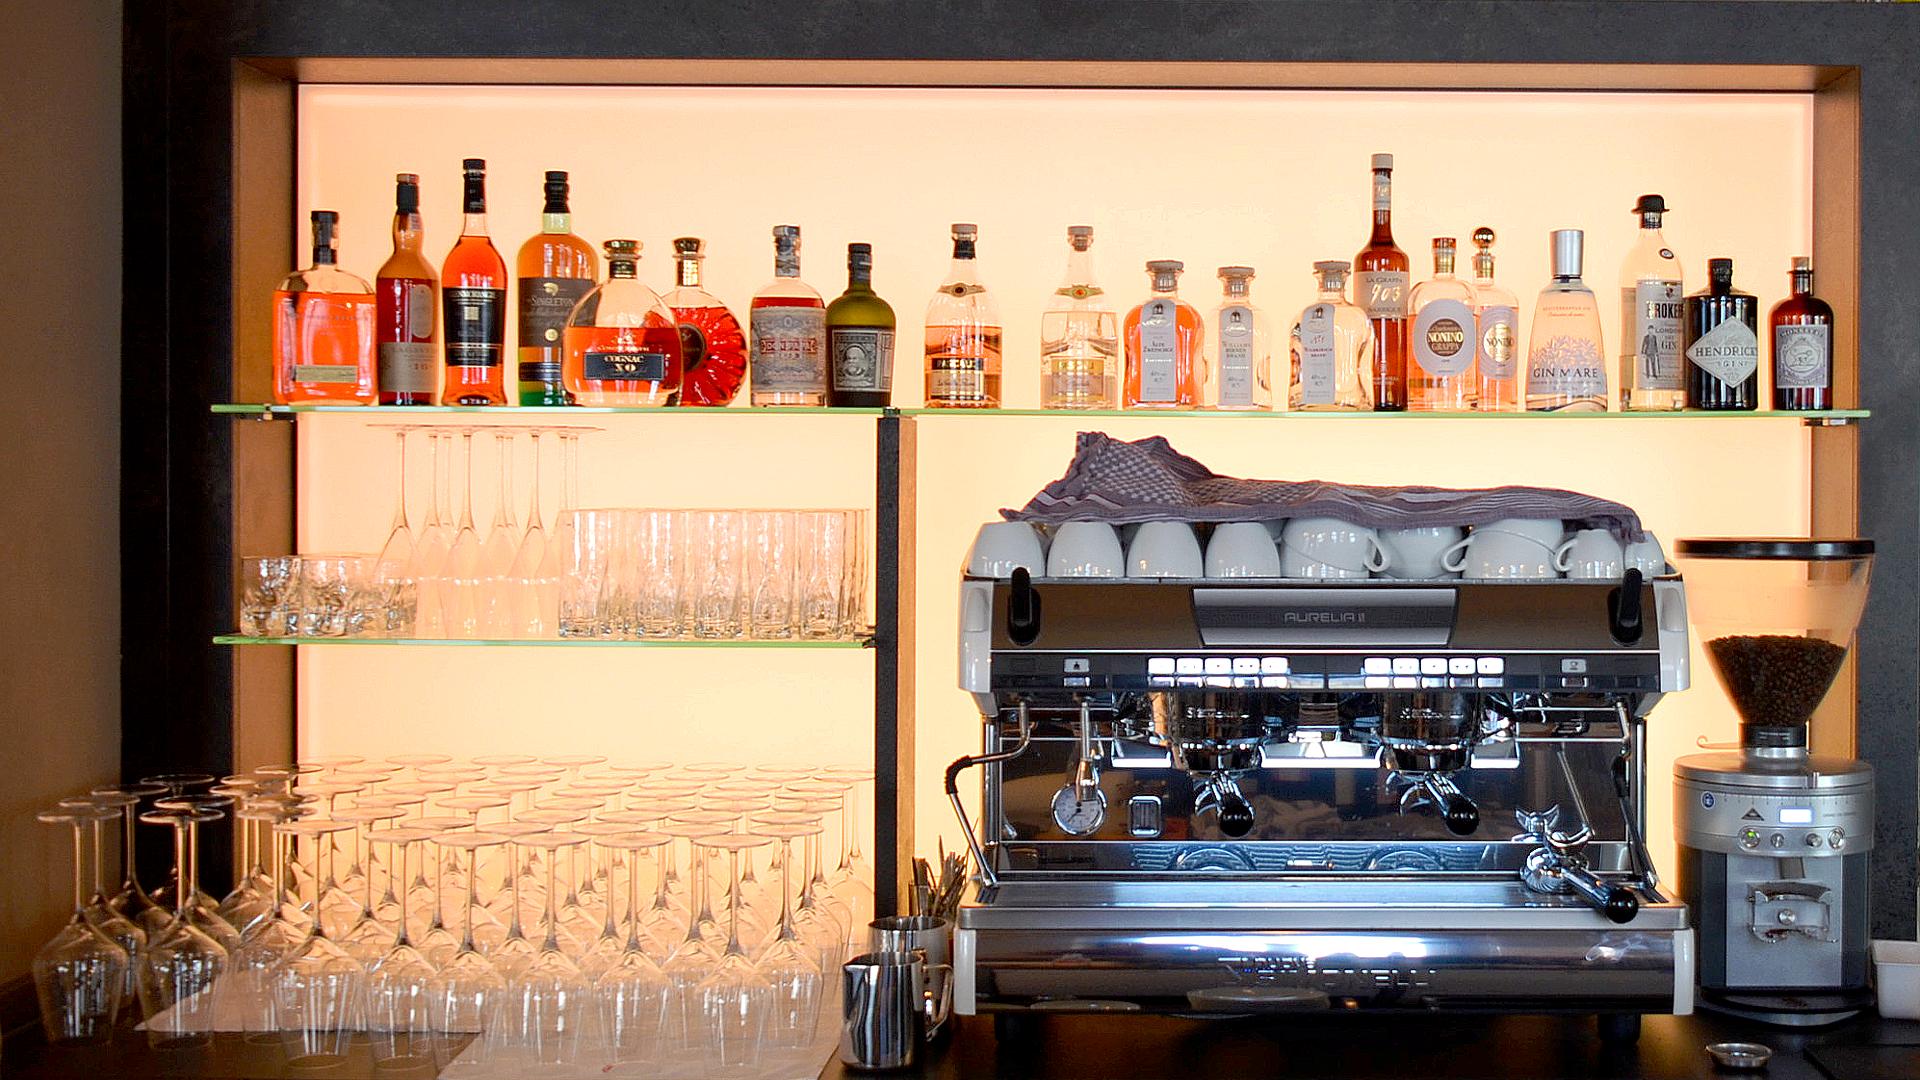 Bild: Café & Weinbar achtzehn97 im EG nach der Sanierung - Tresen mit Espressomaschine und beleuchtetem Spirituosenregal